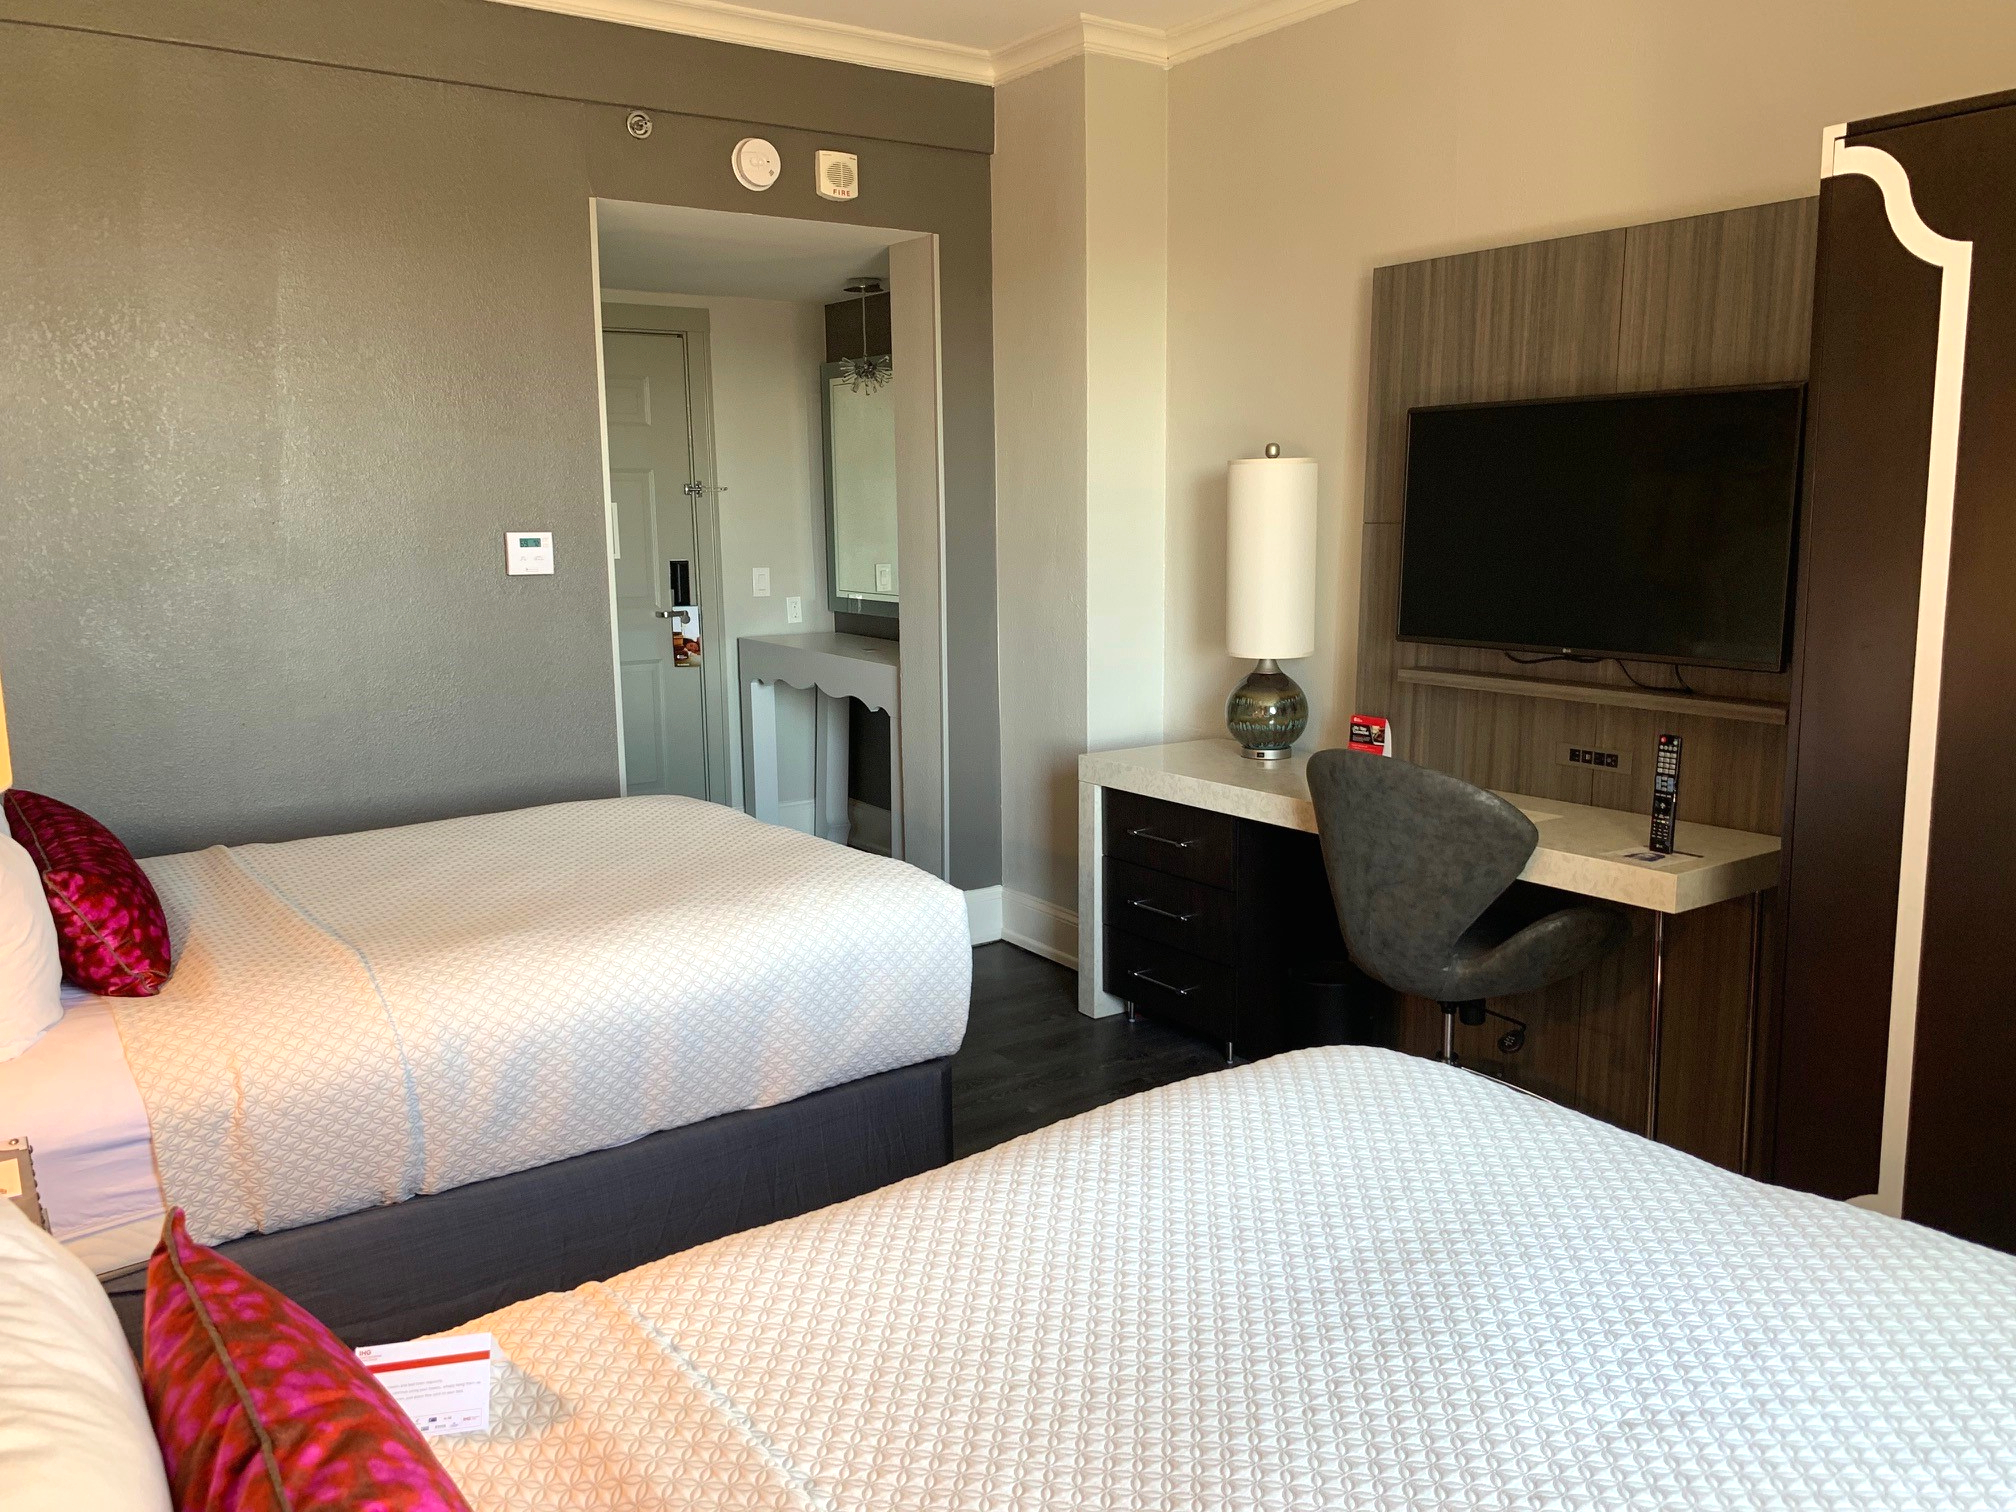 Two bed guestroom at Hotel Indigo